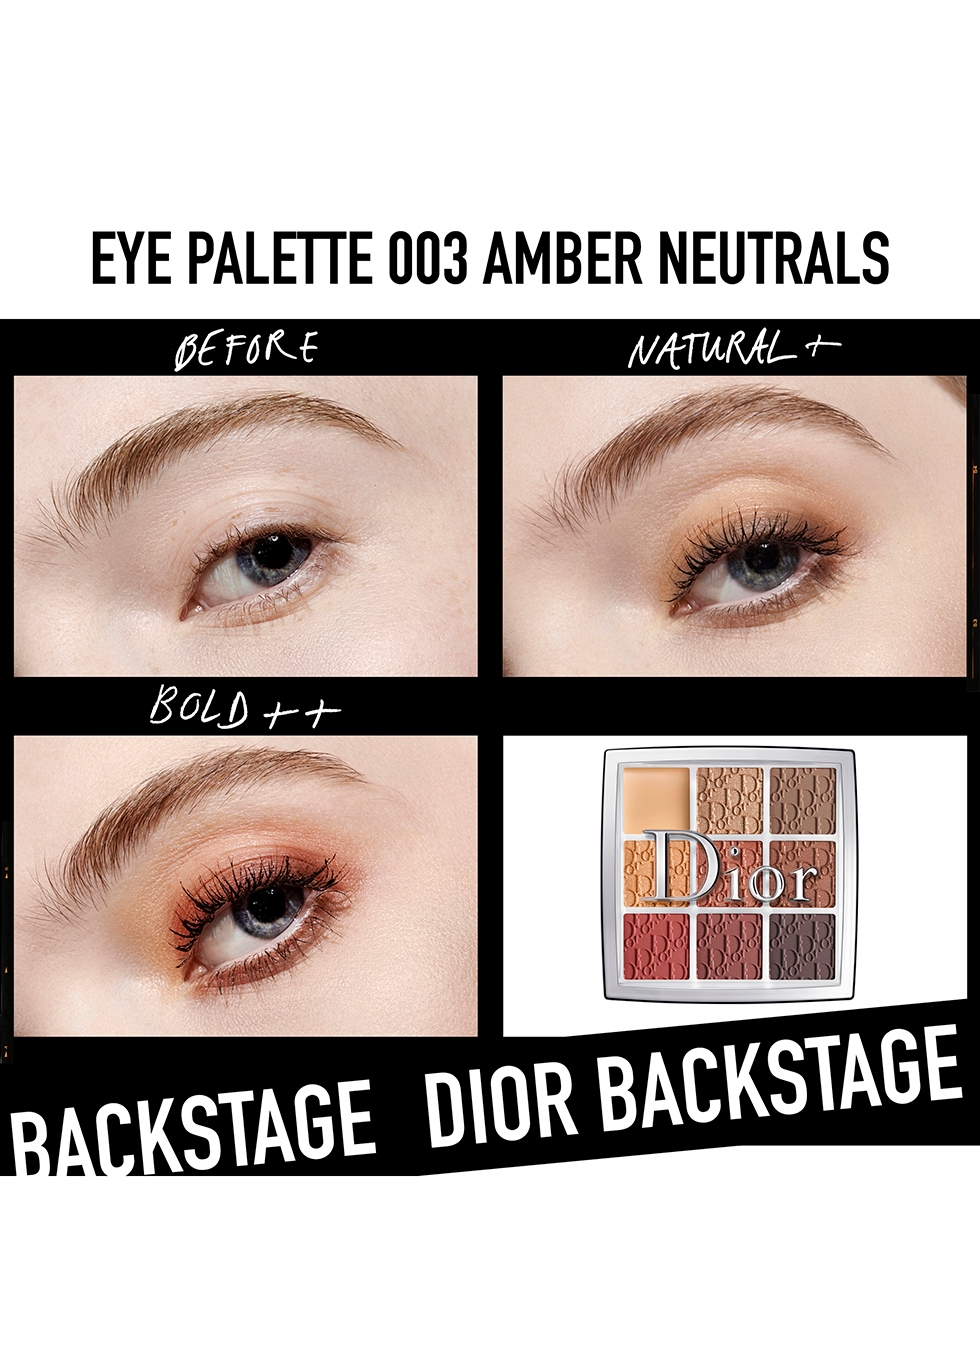 Dior Backstage Eye Palette MultiUse Eye Makeup Palette  DIOR